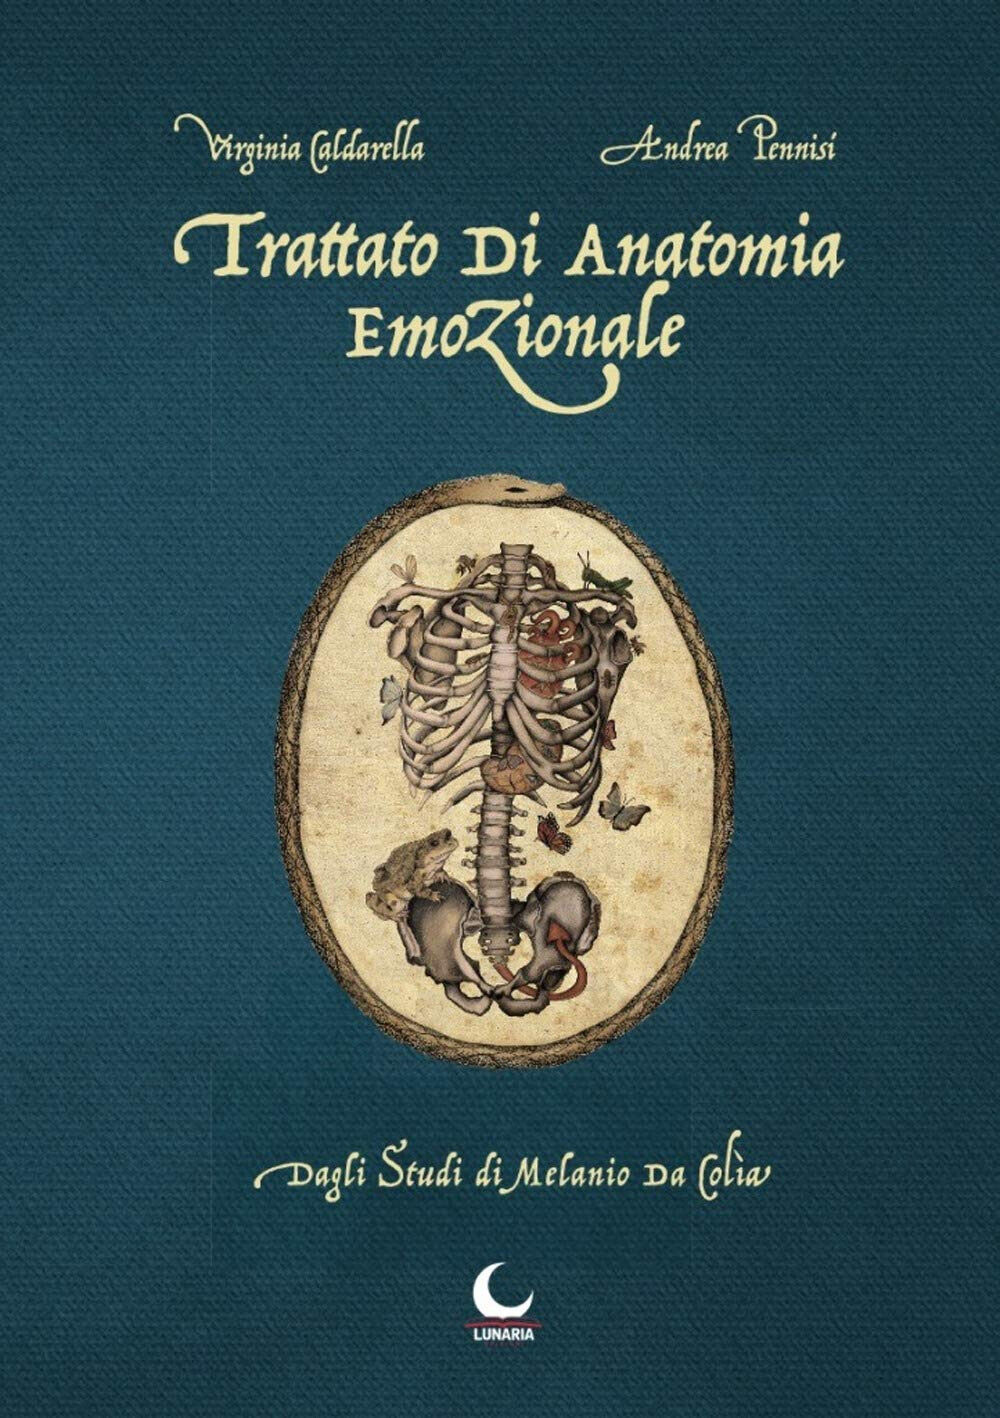 Trattato di anatomia emozionale. Dagli studi di Melanio da Colia - 2019 libro usato